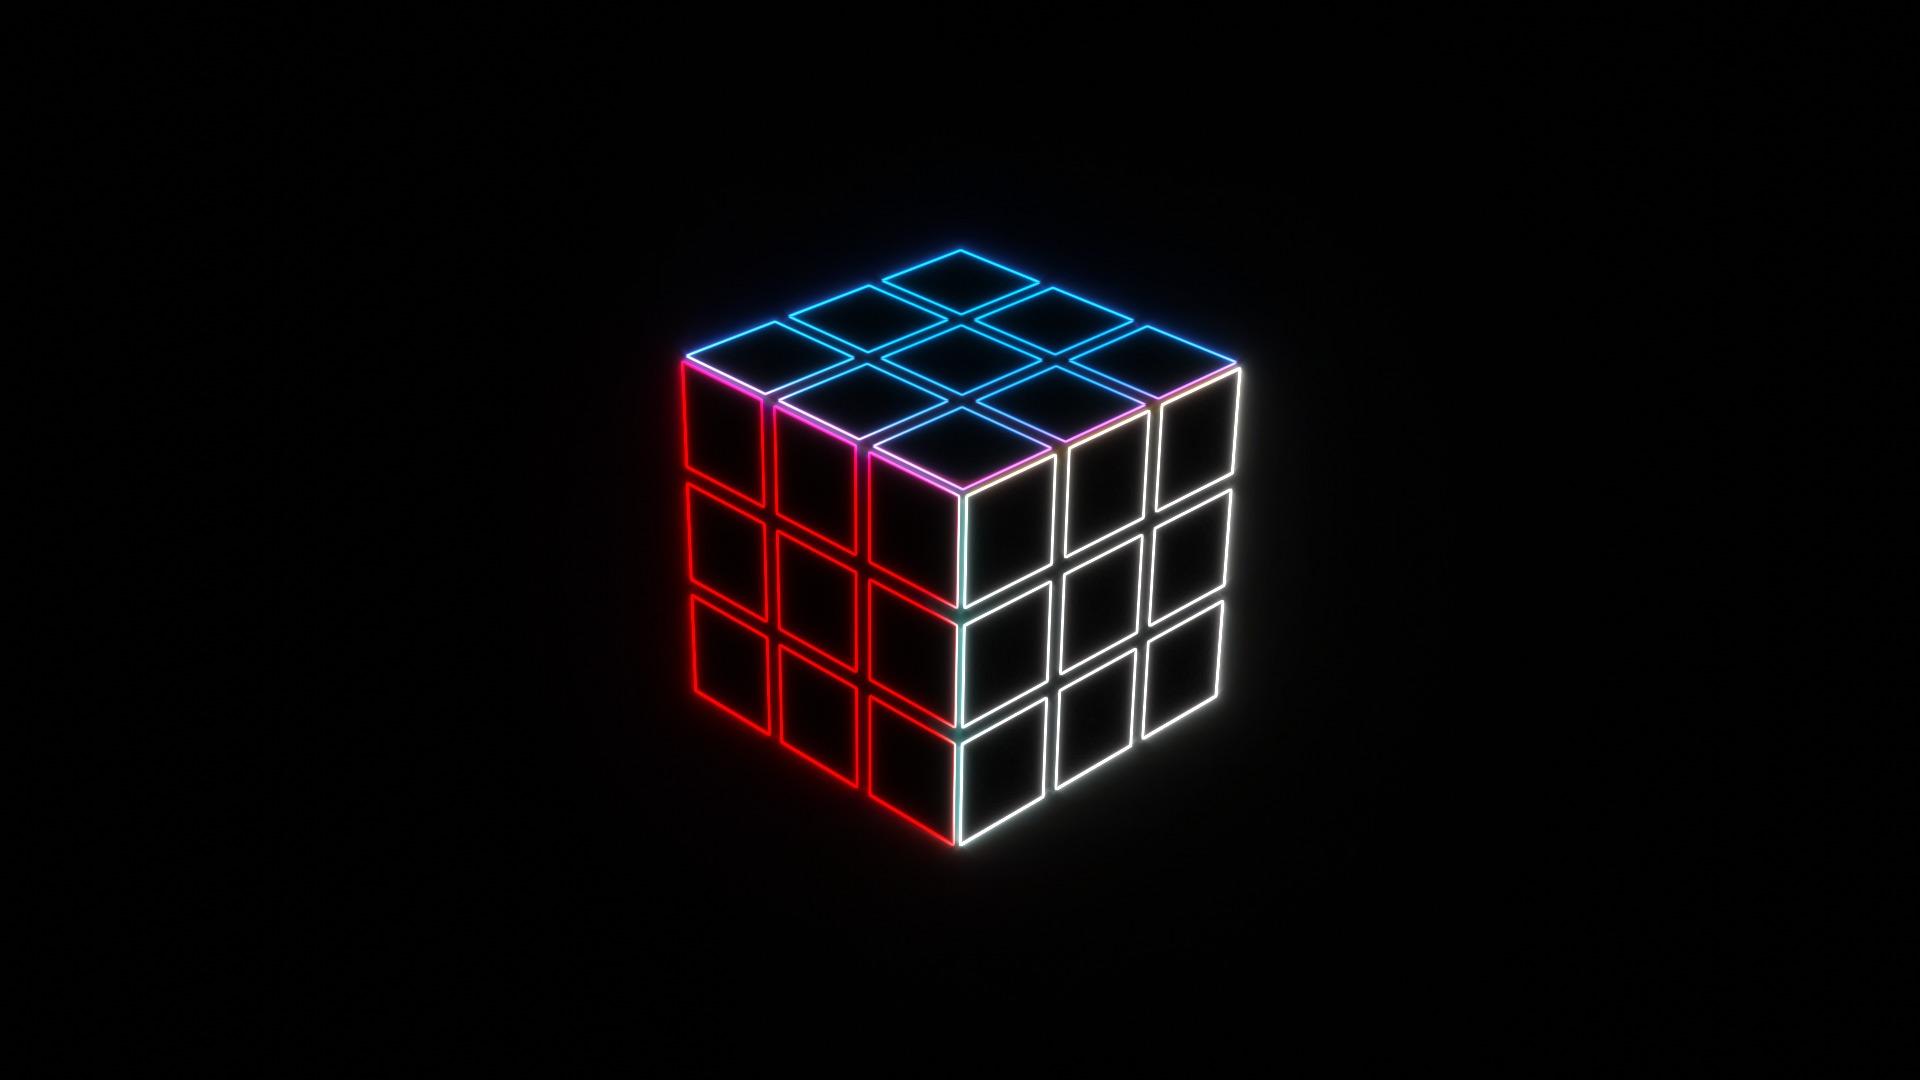 Tải Rubik s Cube 3D Free cho máy tính PC Windows phiên bản mới nhất -  com.freepda.rubiks3d